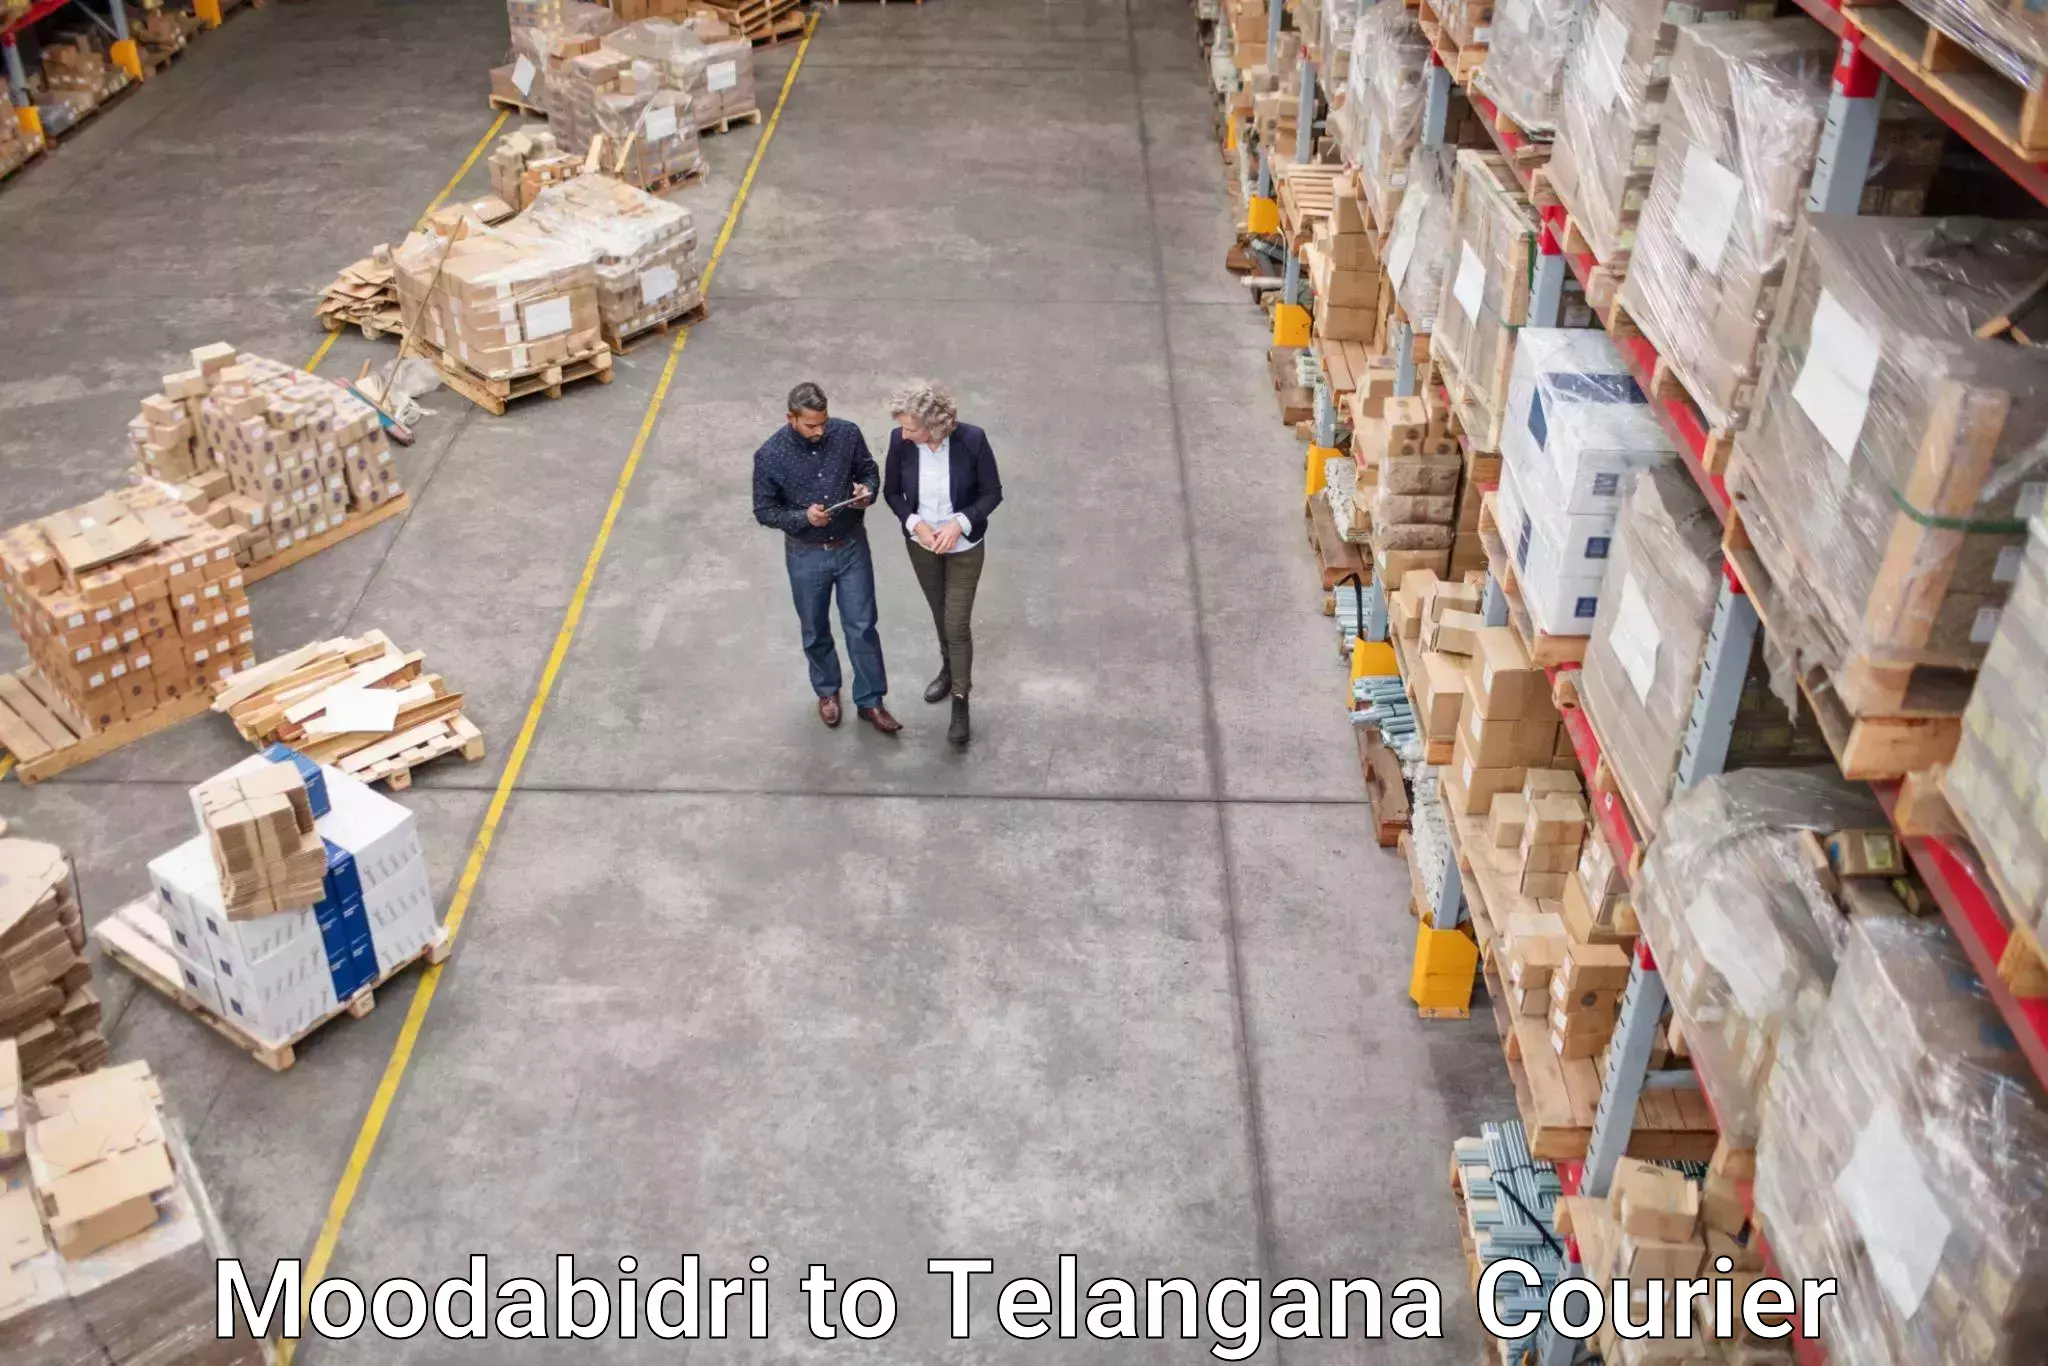 Global logistics network Moodabidri to Kallur